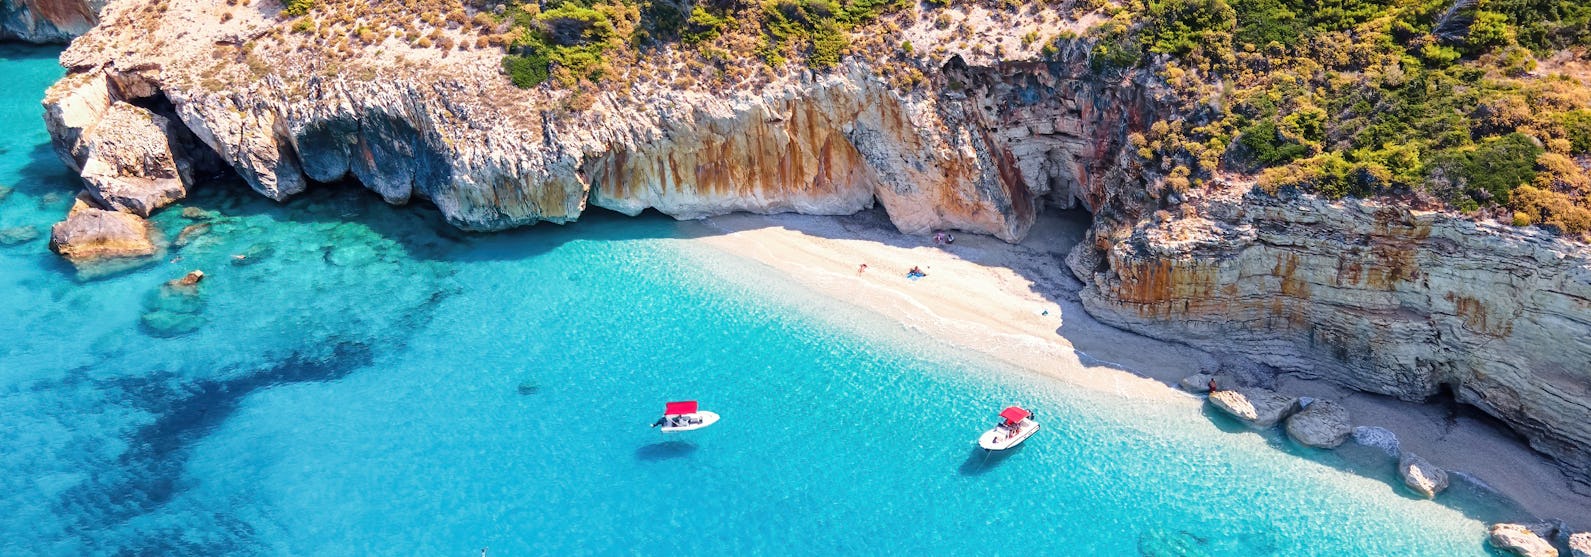 Griekse eilanden cruise